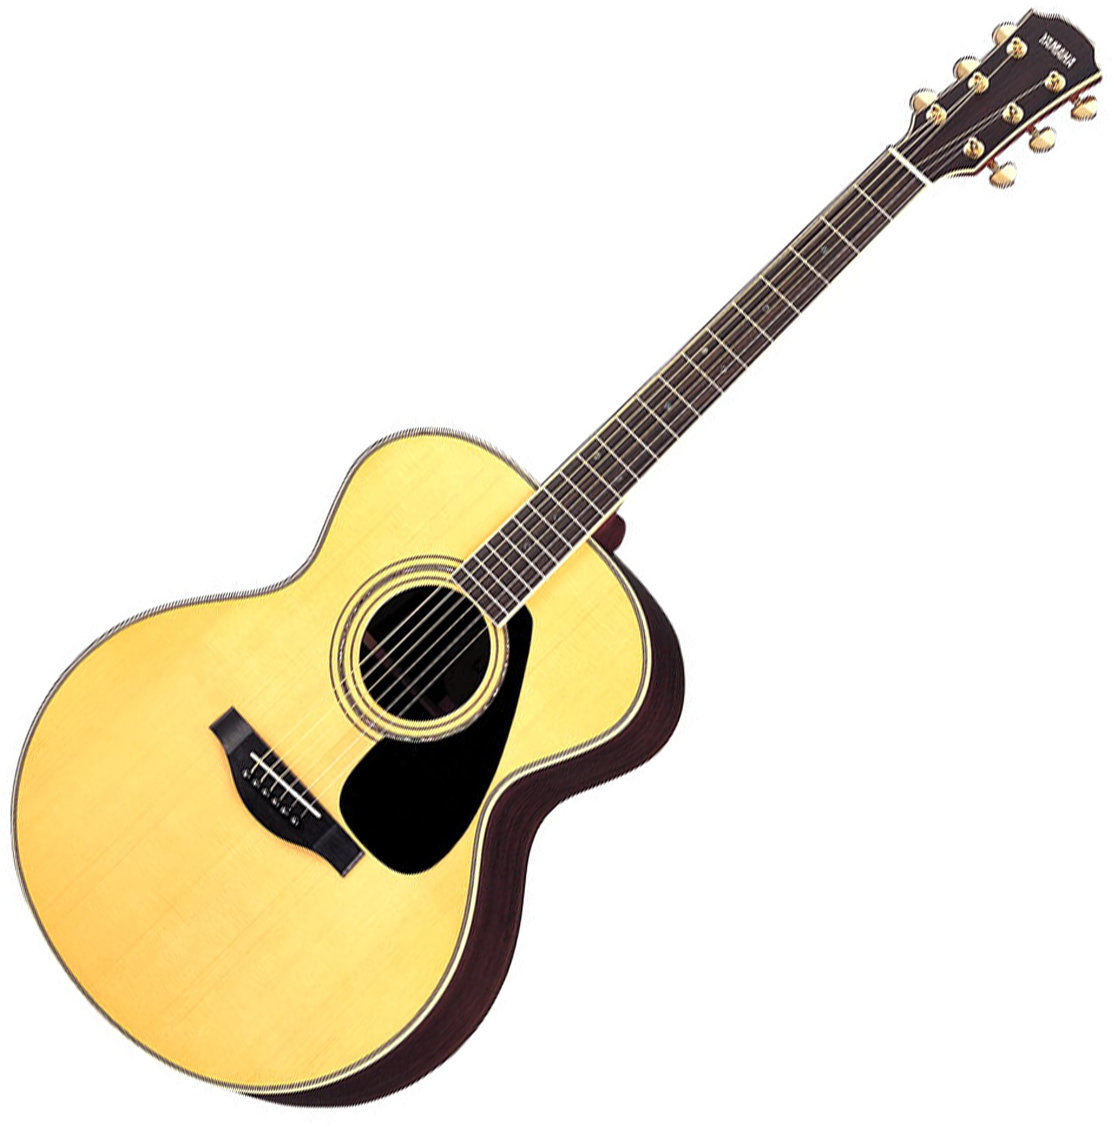 Jumbo akustična gitara Yamaha LJ 16 B-Stock